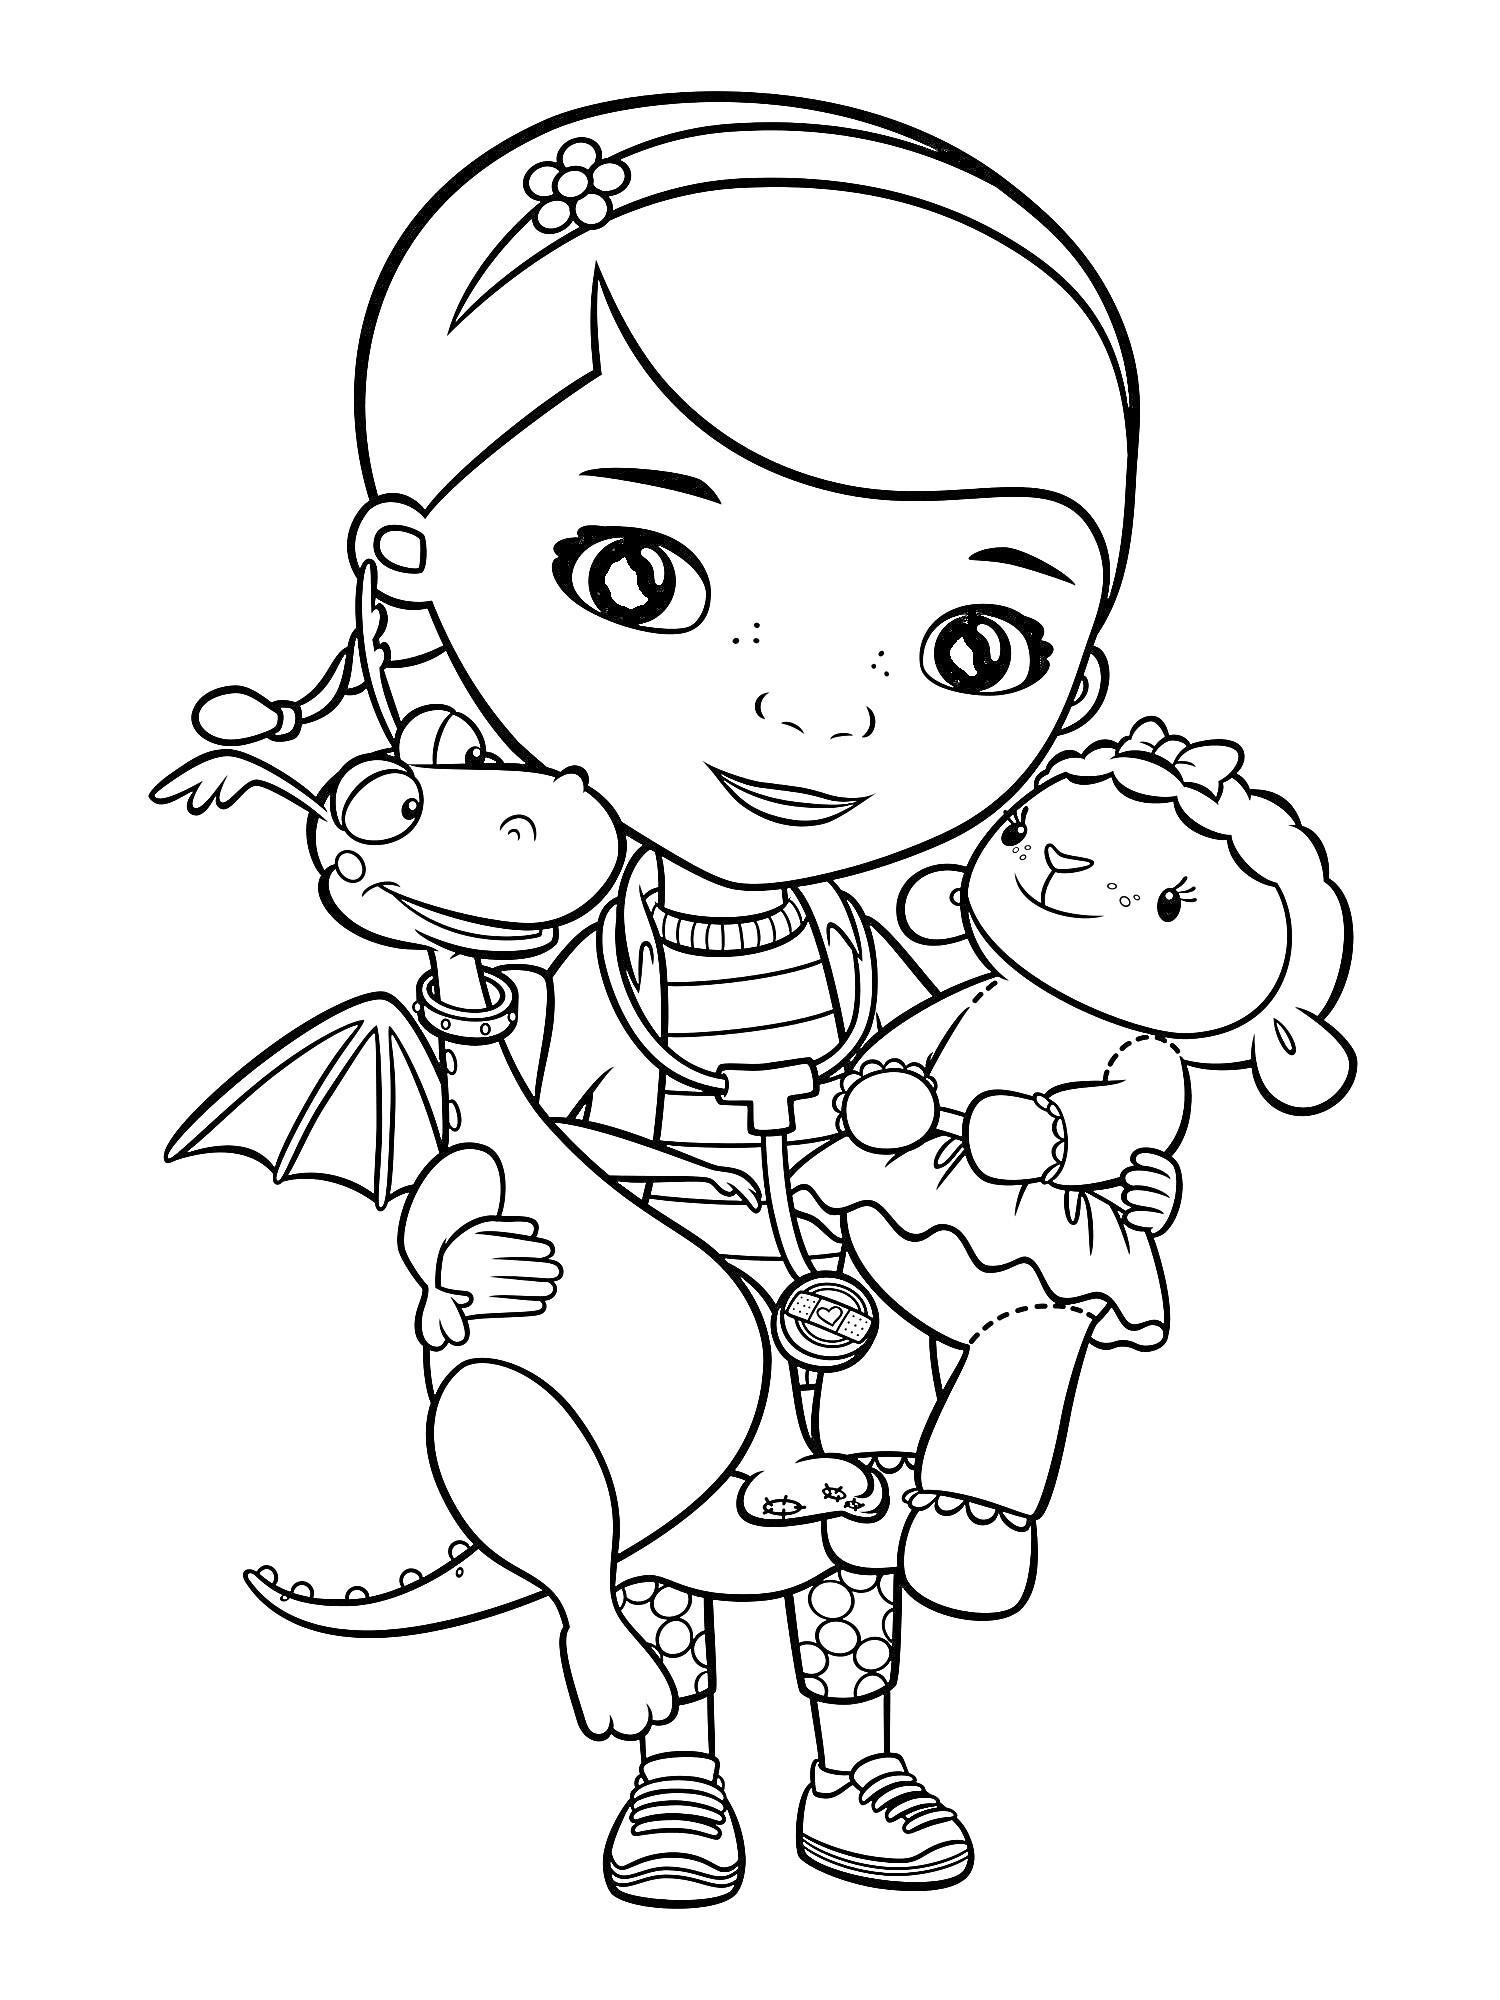 Доктор Плюшева с игрушечным драконом и овечкой